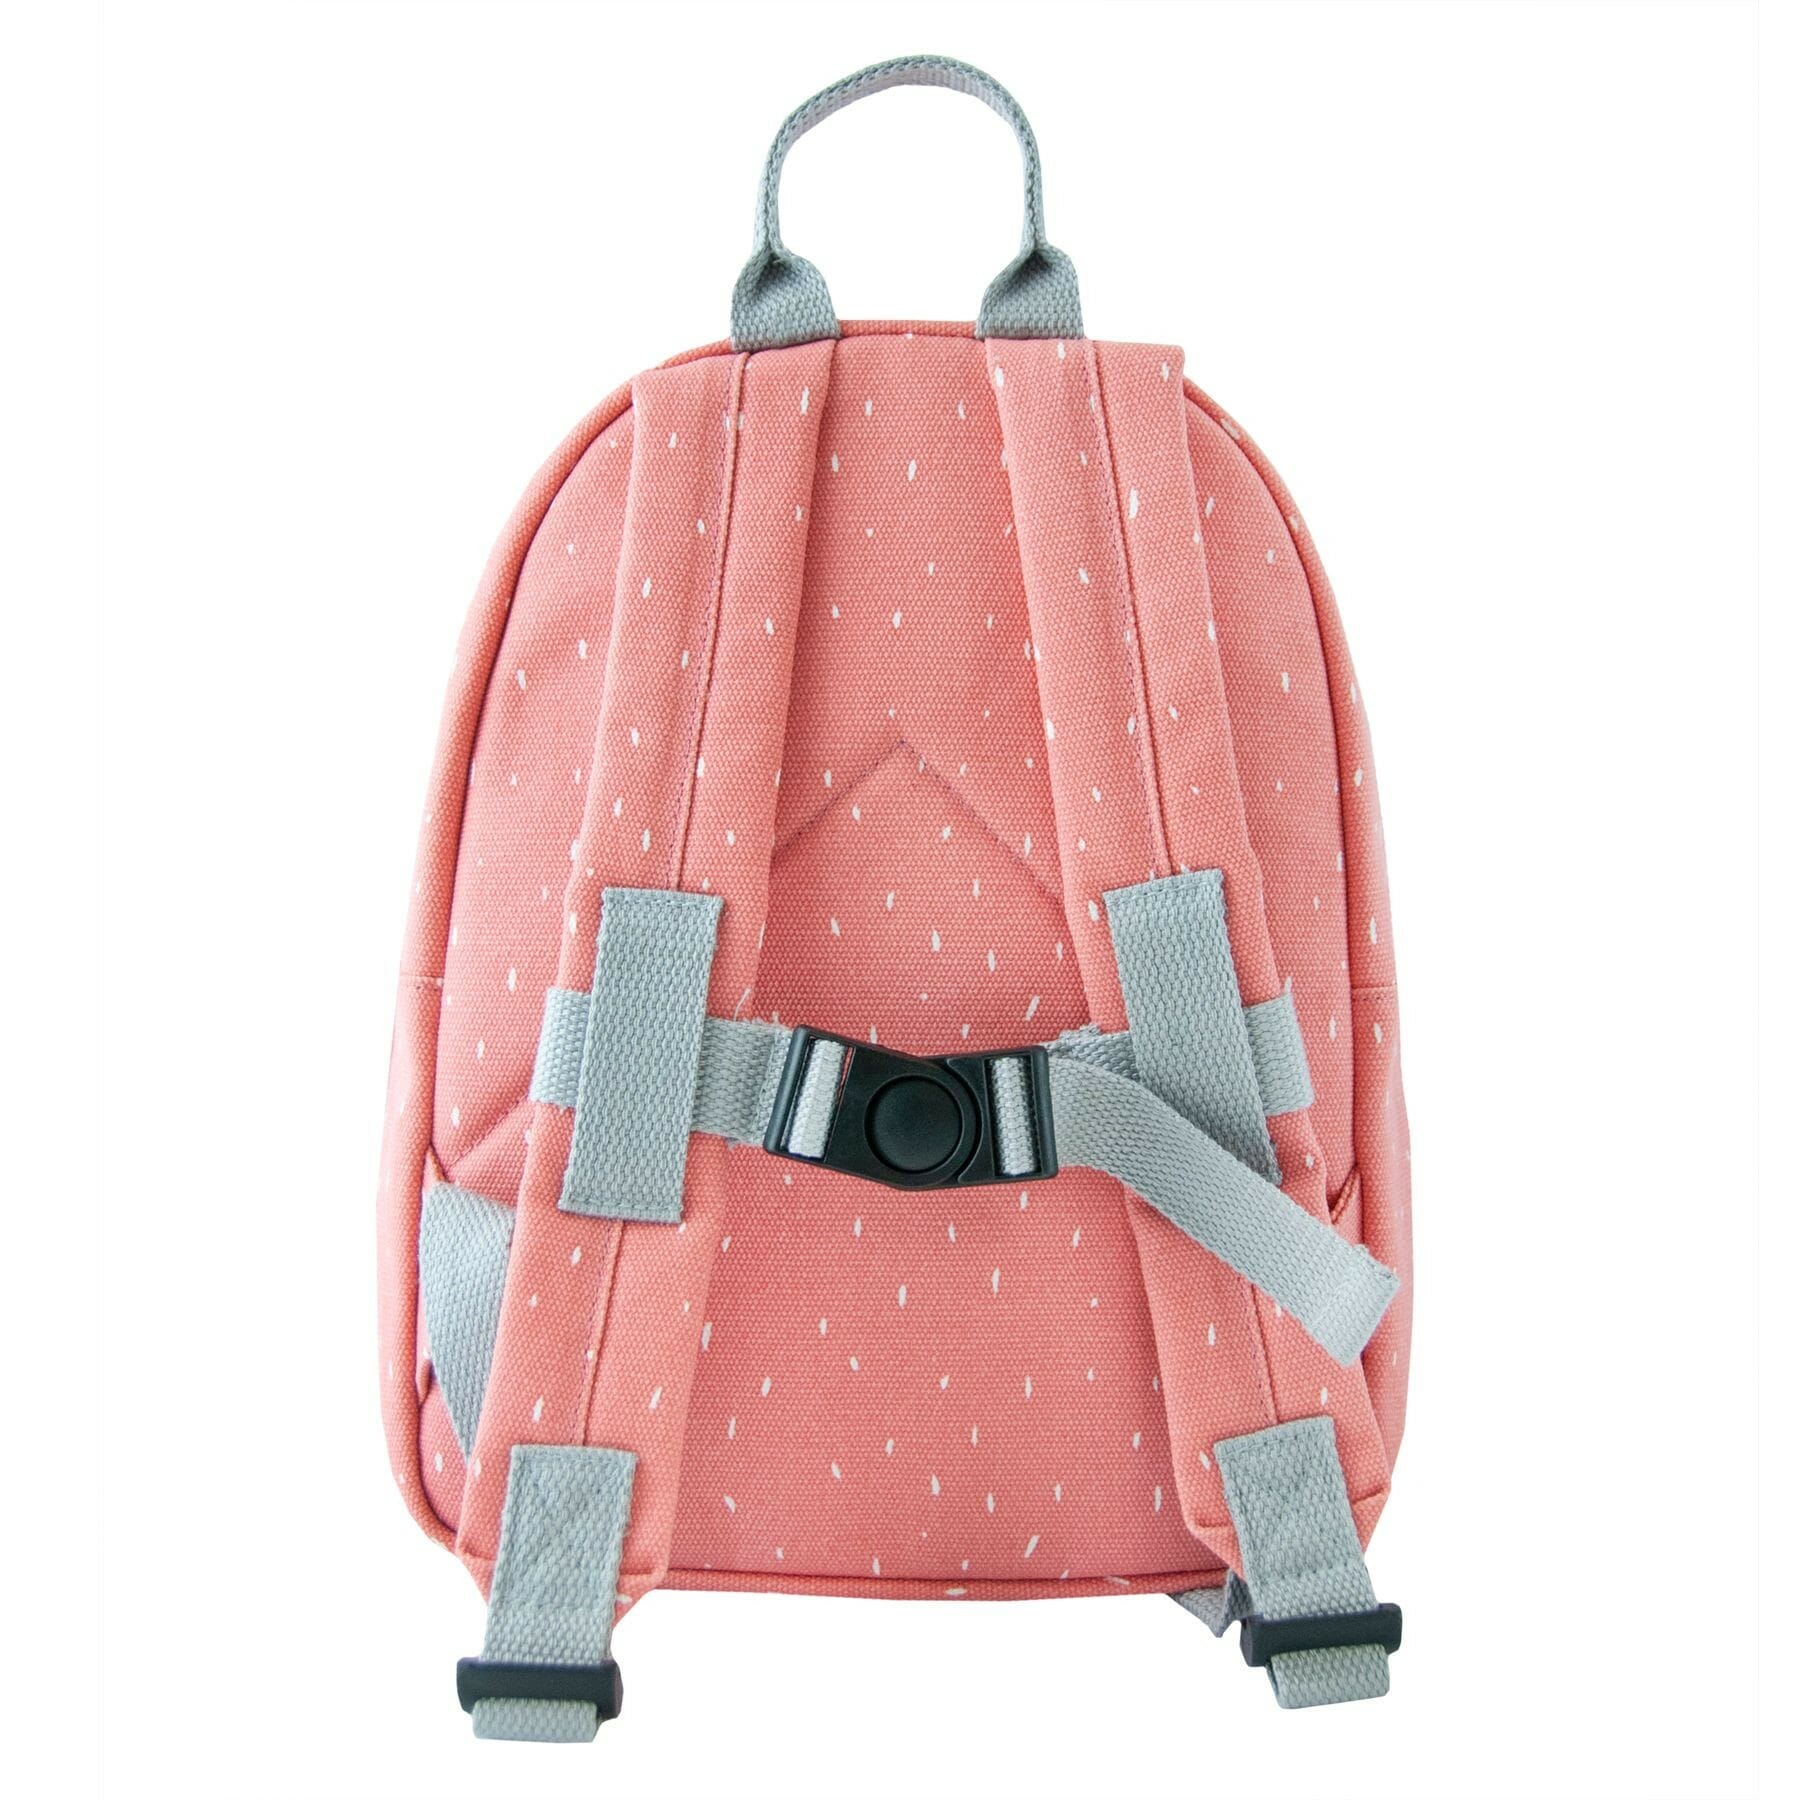 mrs-flamingo-backpack-1.jpg